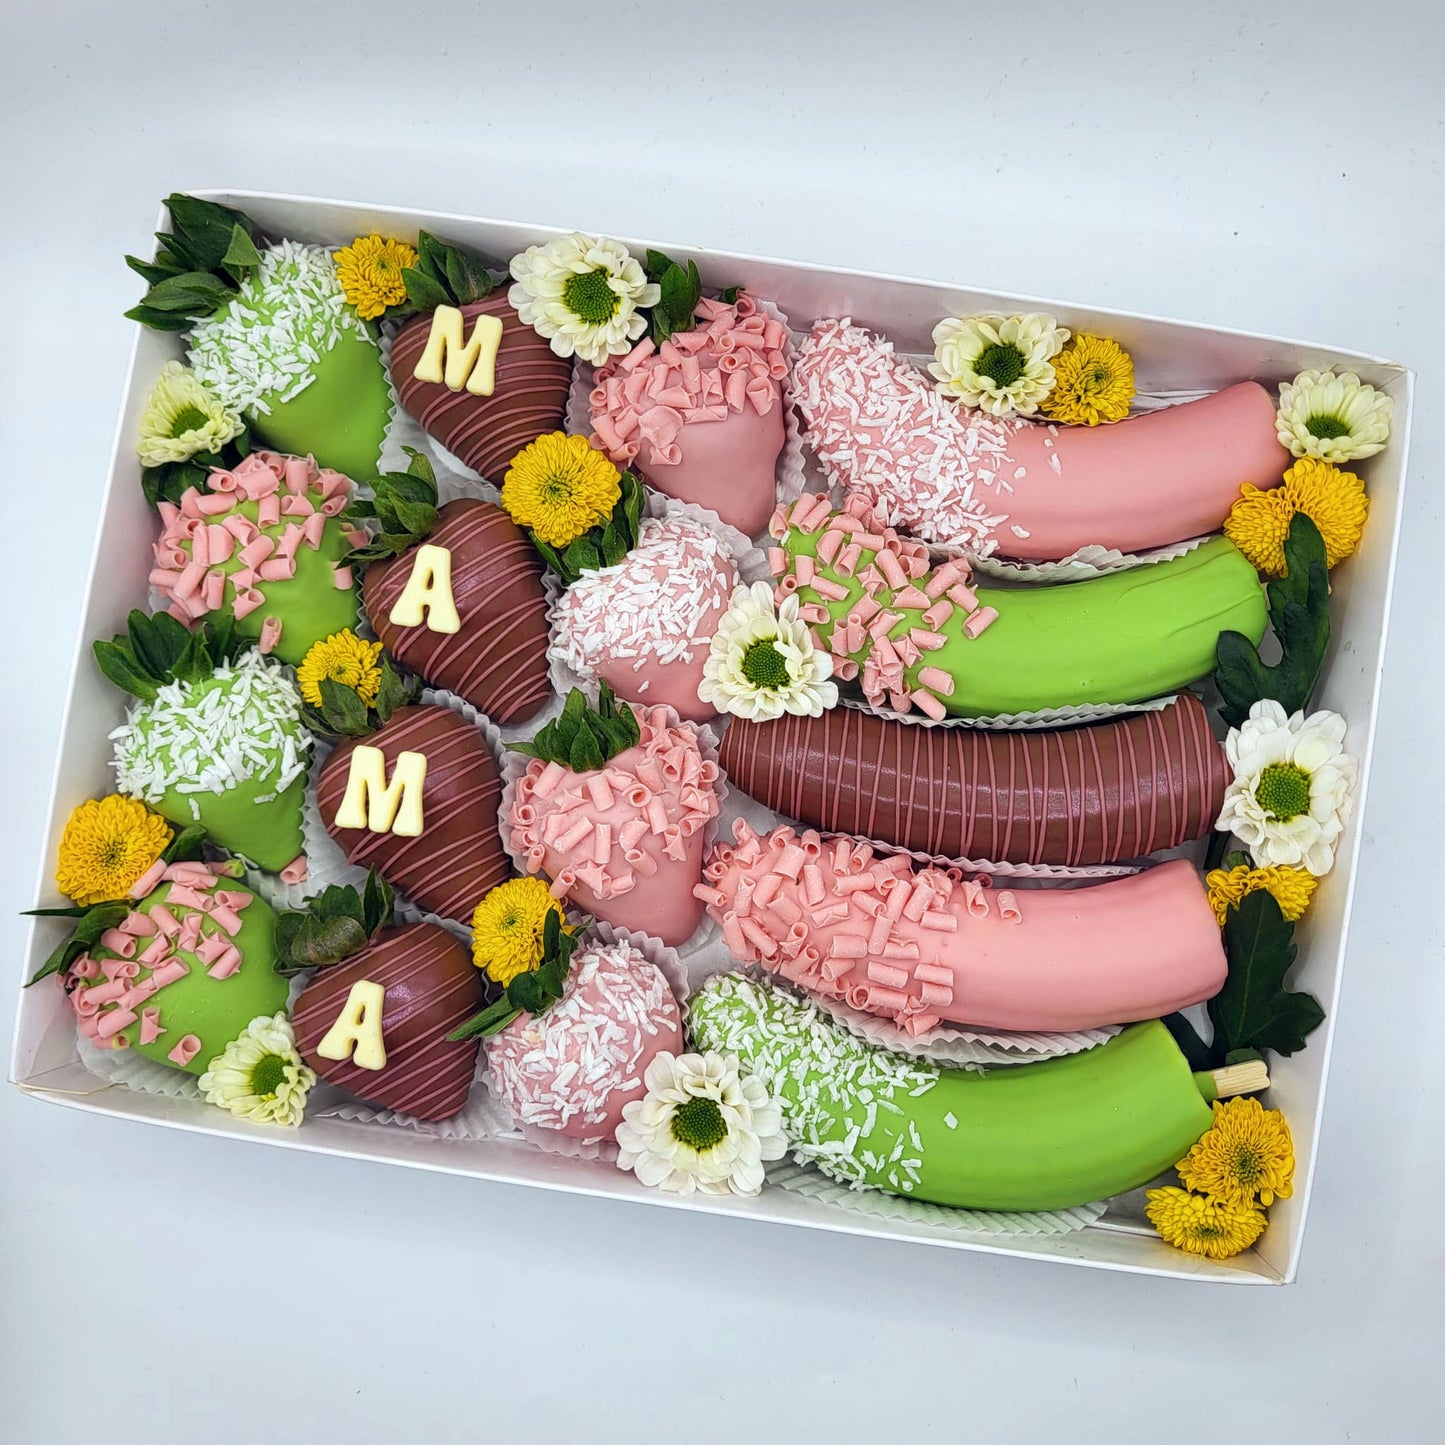 "MAMA" Erdbeeren & Bananen Pralinen Box